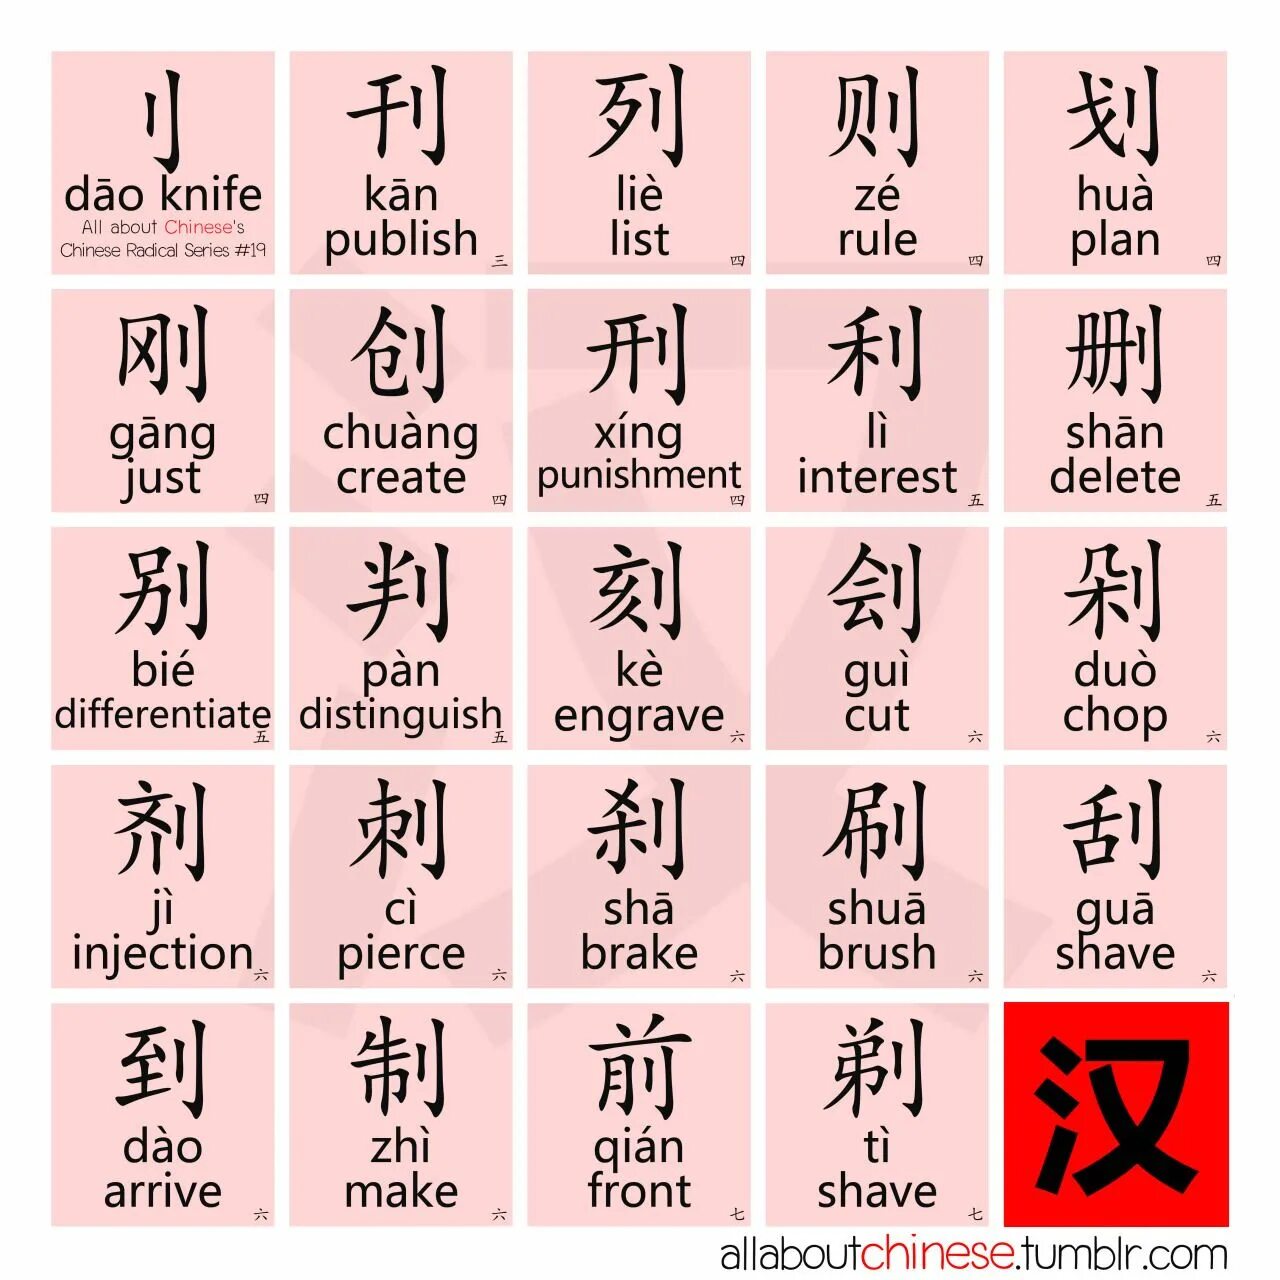 Алфавит китайского языка пиньинь. Китайский алфавит пиньинь таблица. Китайские иероглифы пиньинь. Китайский пиньинь алфавит с произношением.